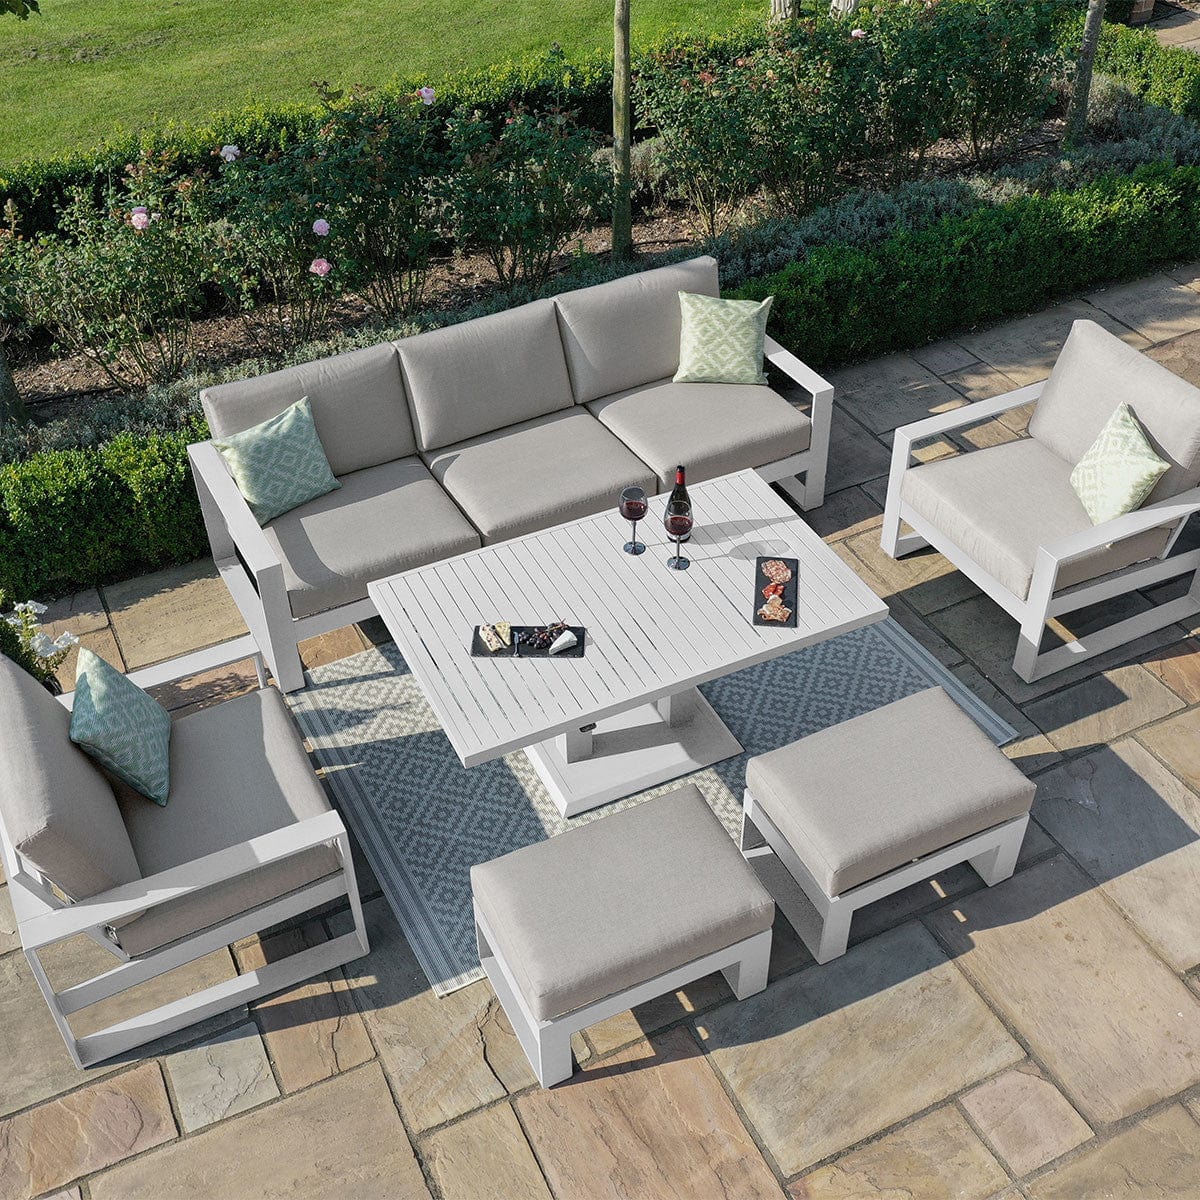 Maze Outdoors Amalfi 3 Seat Sofa Set With Rising Table / White House of Isabella UK